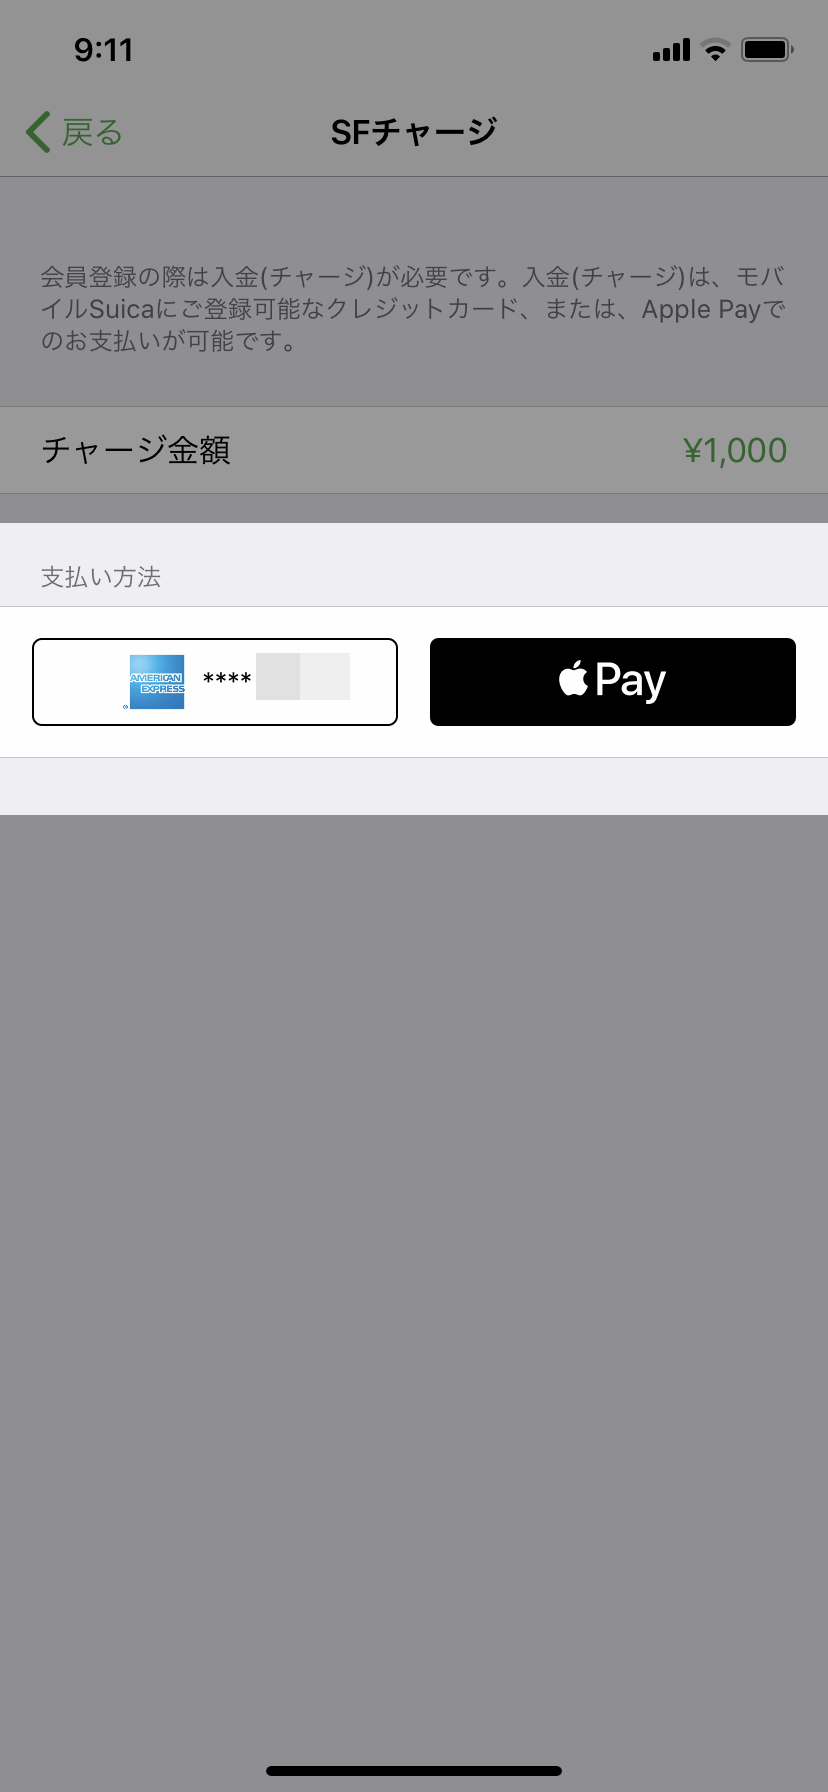 iPhoneでモバイルSuicaを新規発行してApple Payにも登録する方法のまとめ